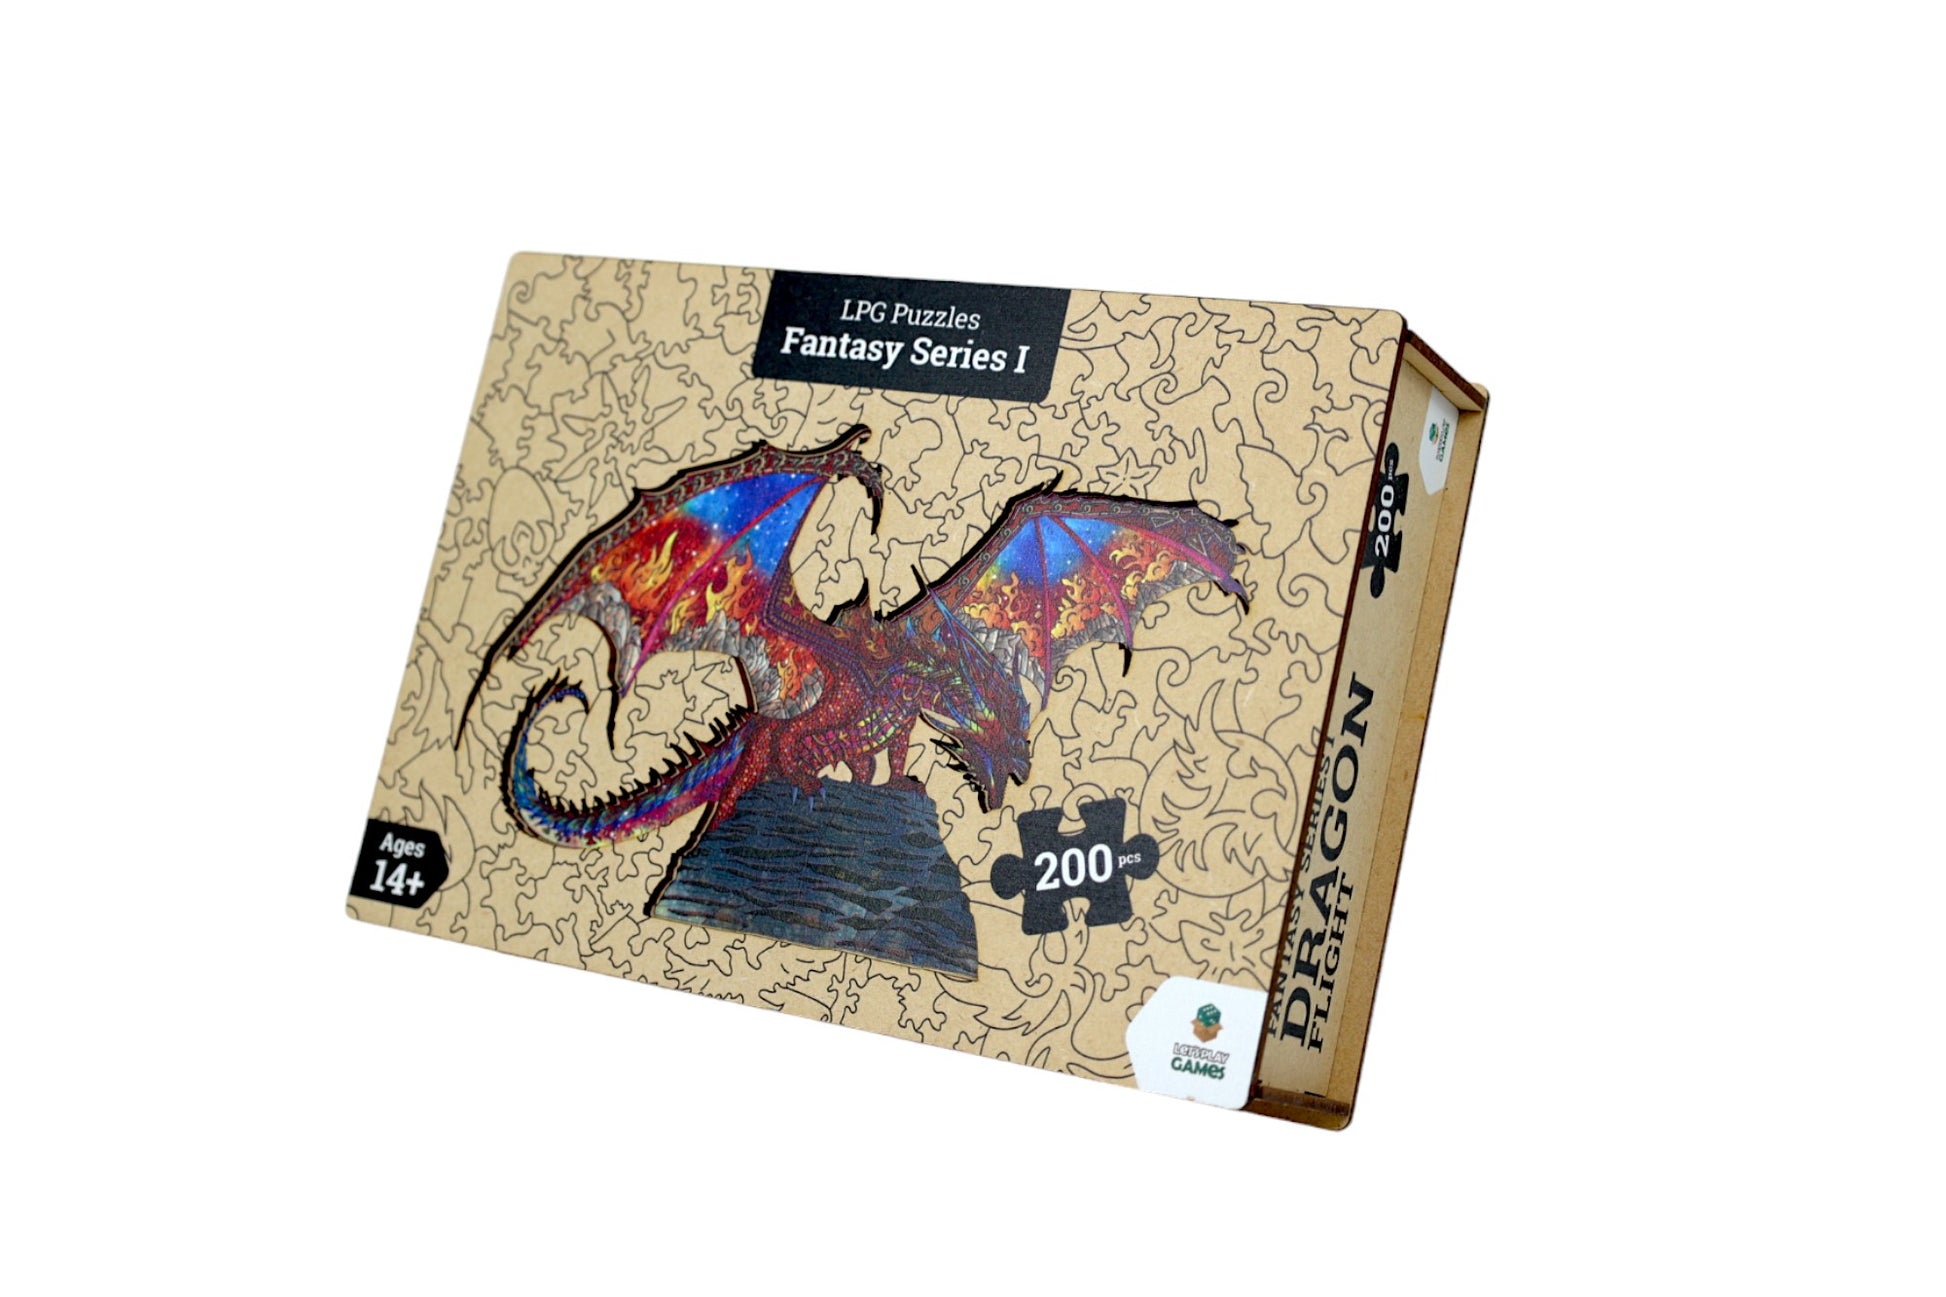 LPG Puzzles Wooden Fantasy Puzzle - Dragon Flight